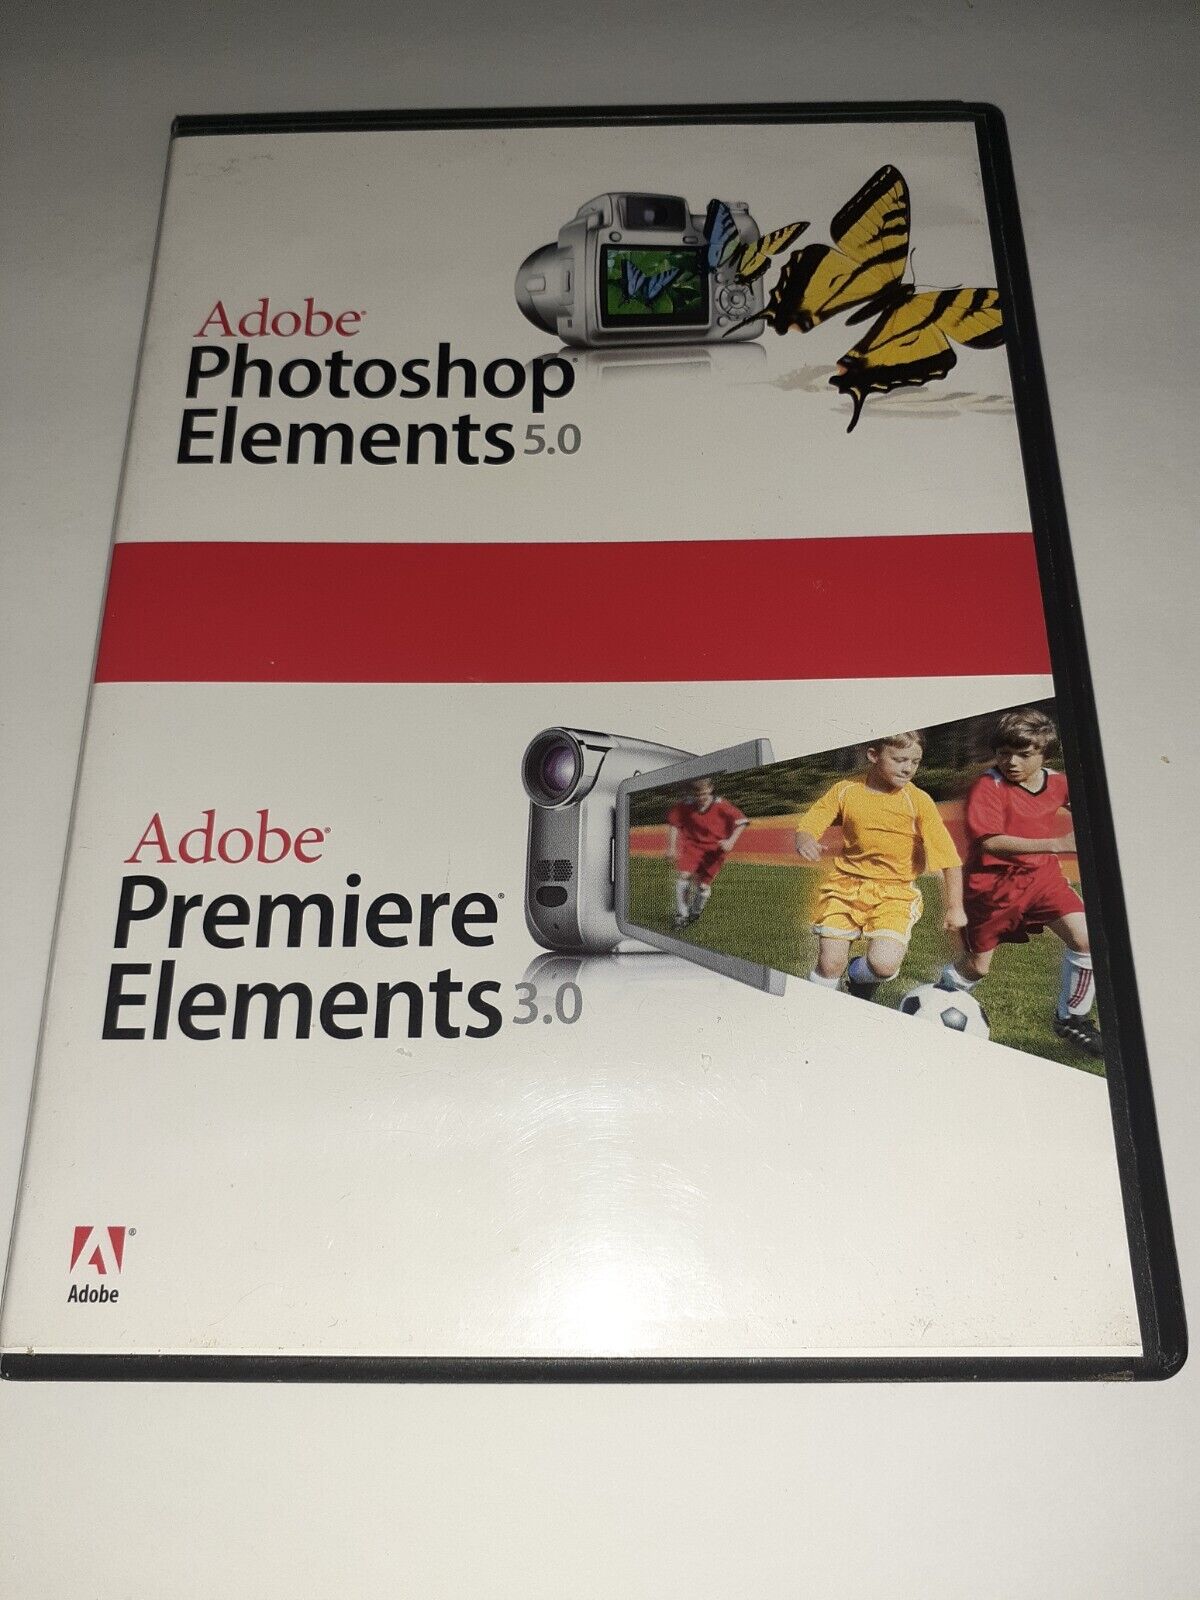 Adobe  Photoshop Elements 5.0 / Premiere Elements 3.0 DVDs for PC